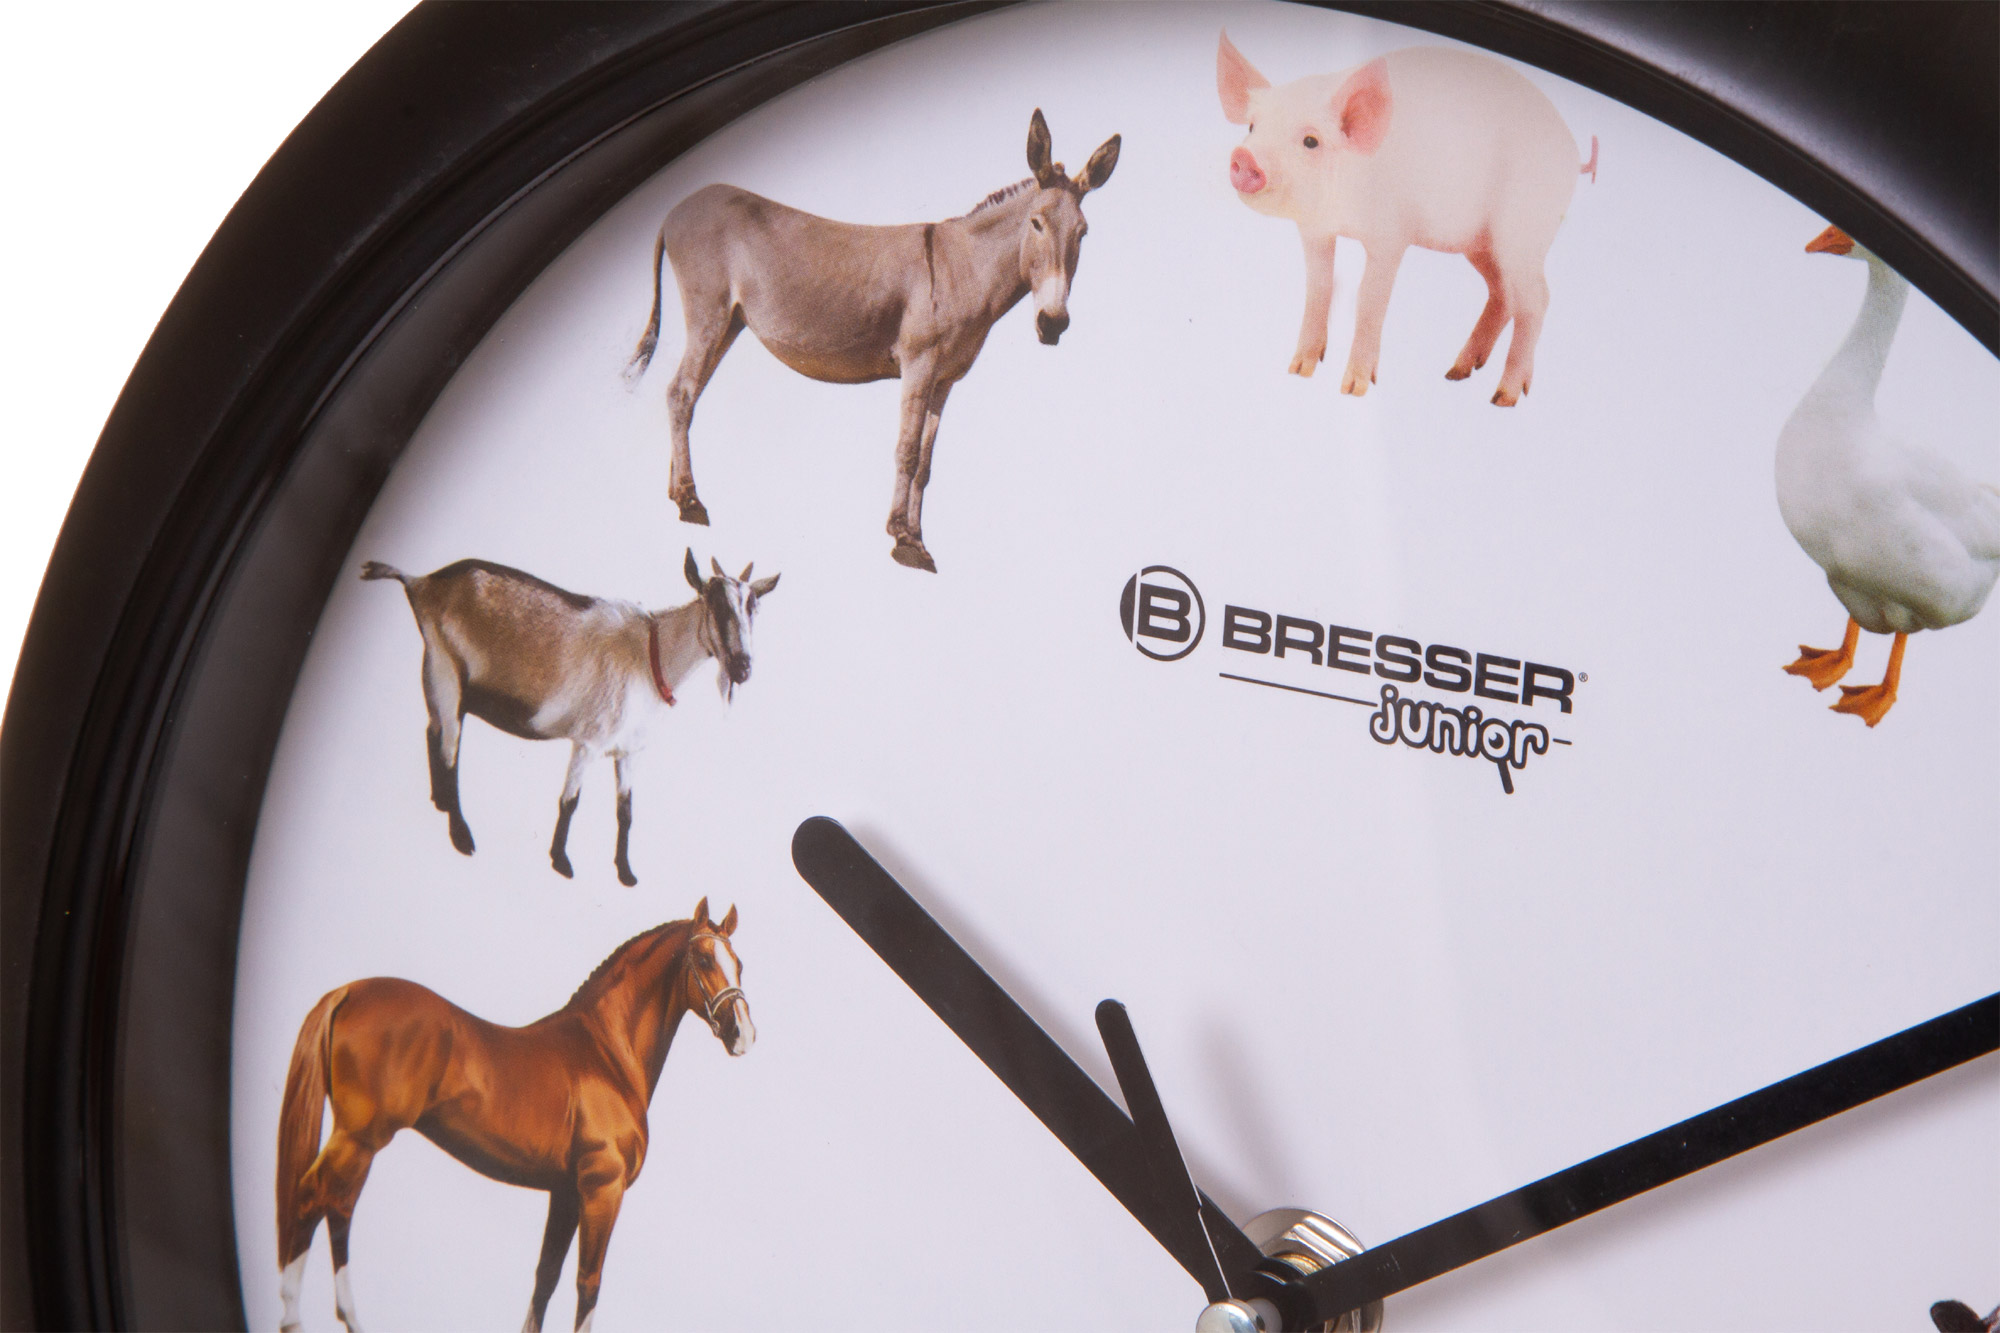 Часы про животных. Часы с животными. Часы с голосами животных. Животное и часы. Часы с птицами вместо цифр.